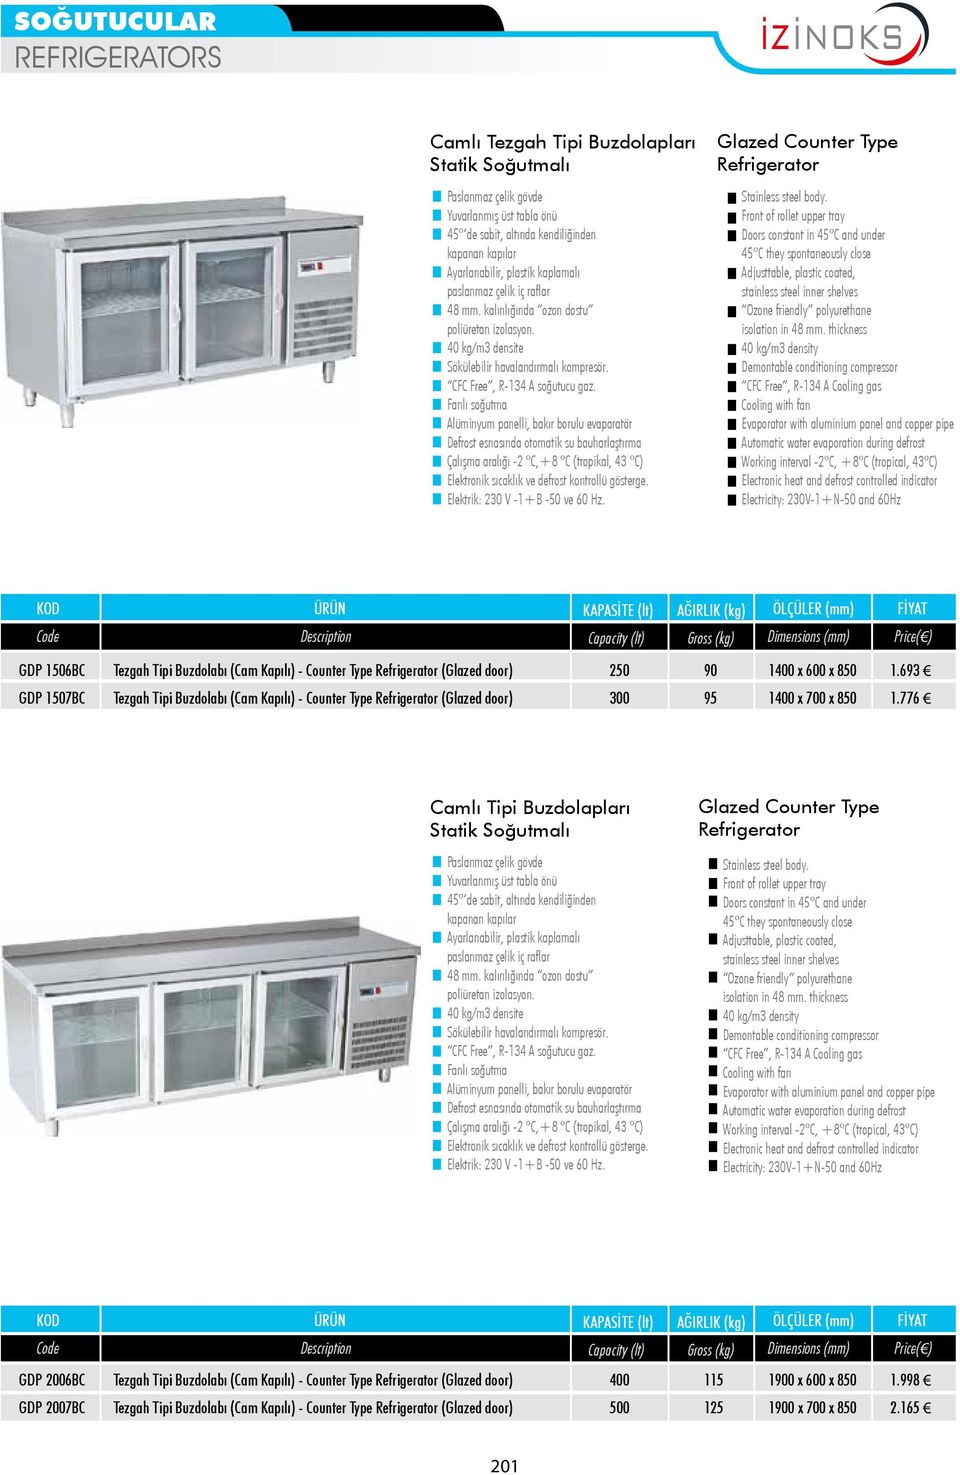 776 Camlı Tipi Buzdolapları Statik Soğutmalı soğutma Glazed Counter Type Refrigerator Cooling with fan GDP 2006BC Tezgah Tipi Buzdolabı (Cam Kapılı) - Counter Type